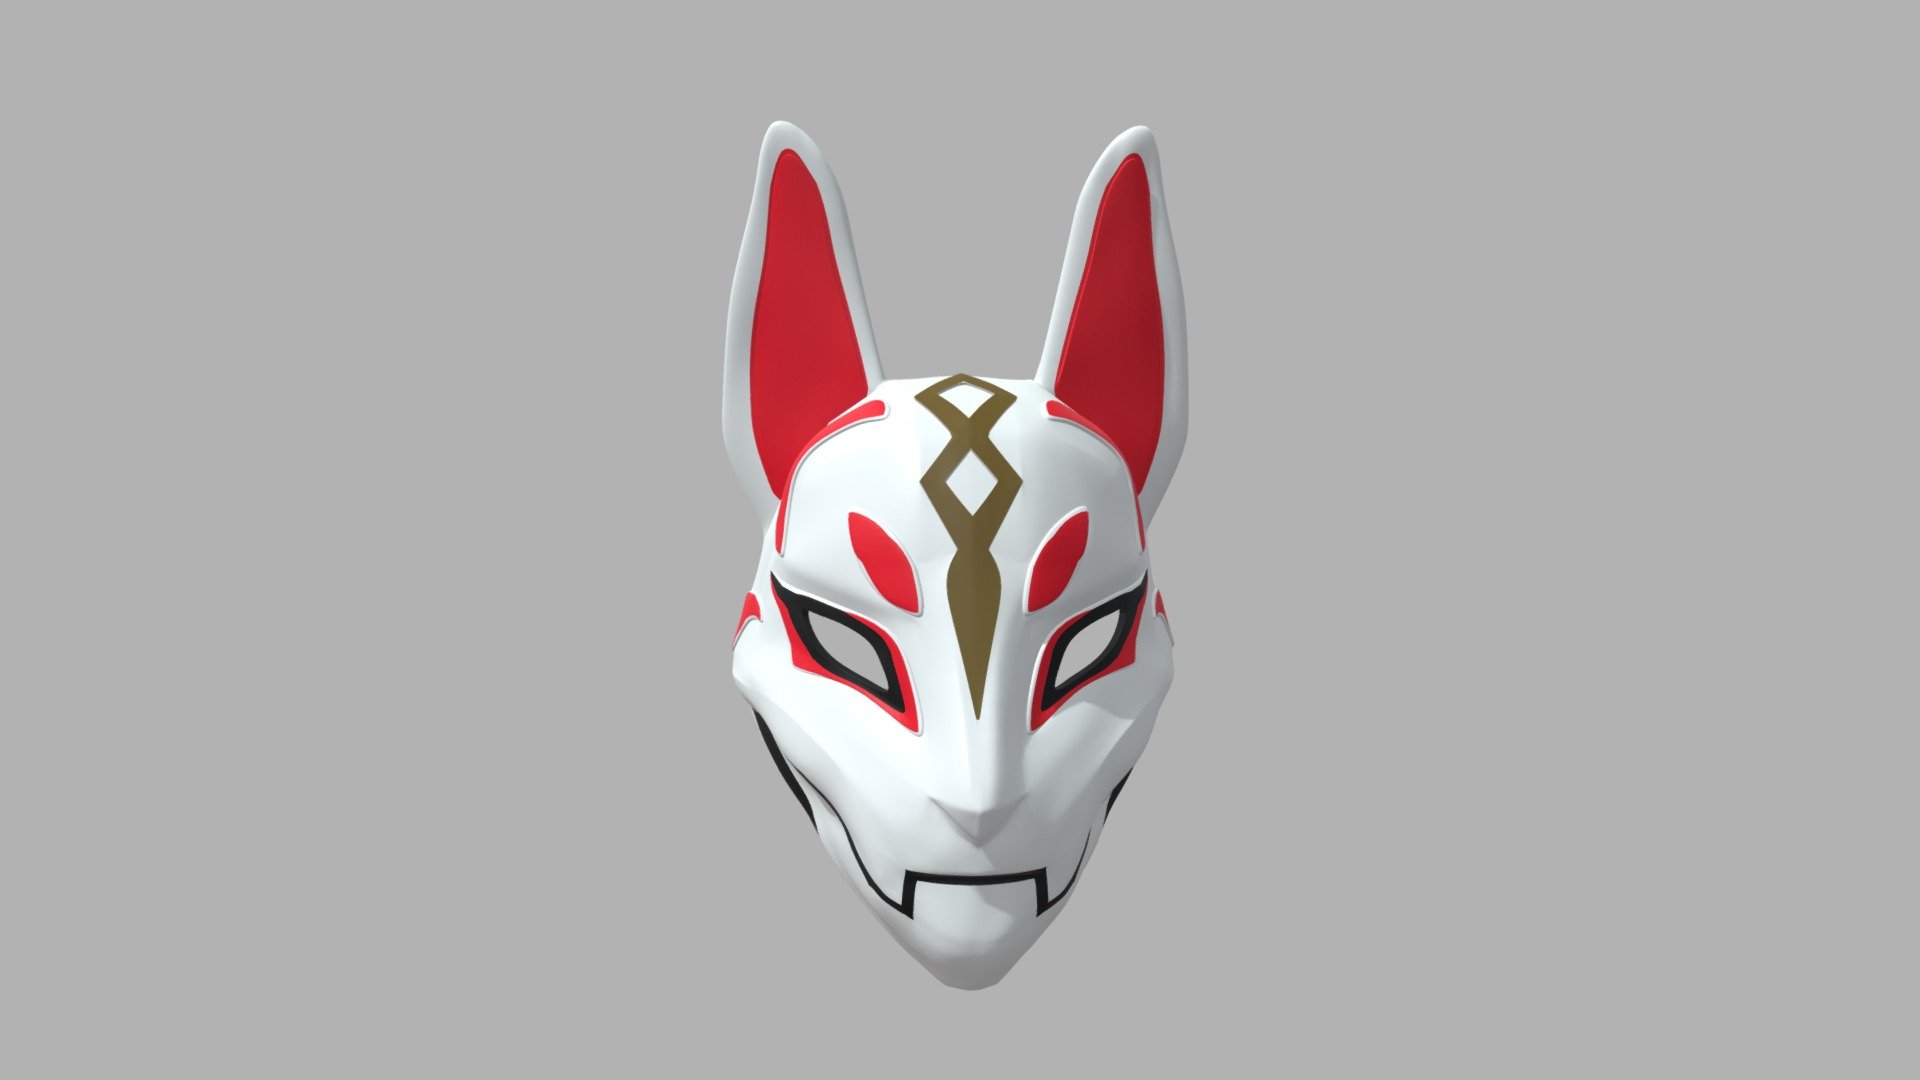 iiniim Máscara Completa Fox Drift Mask 3D Printed PVC Máscara con Borlas Campanas Hecha a Mano Disfraces Accesorios Halloween Cosplay Festival Fiesta Show Adultos Niños 